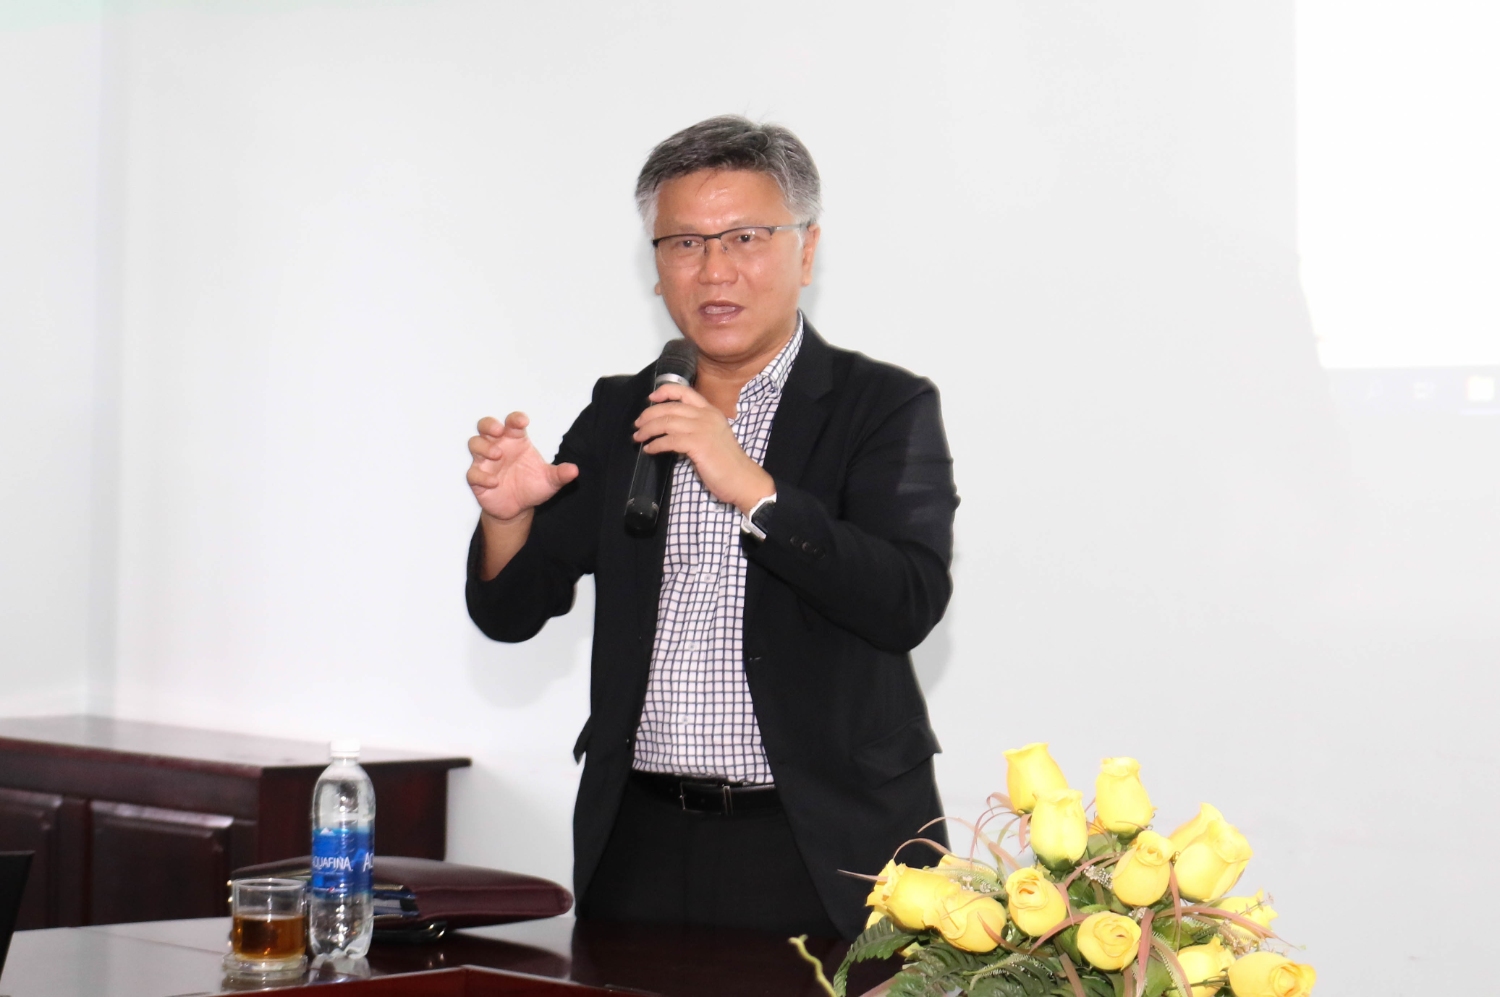 Gặp gỡ, giao lưu cùng GS. Paul Duong Tran:“Cách thức đăng bài báo trên tạp chí quốc tế”